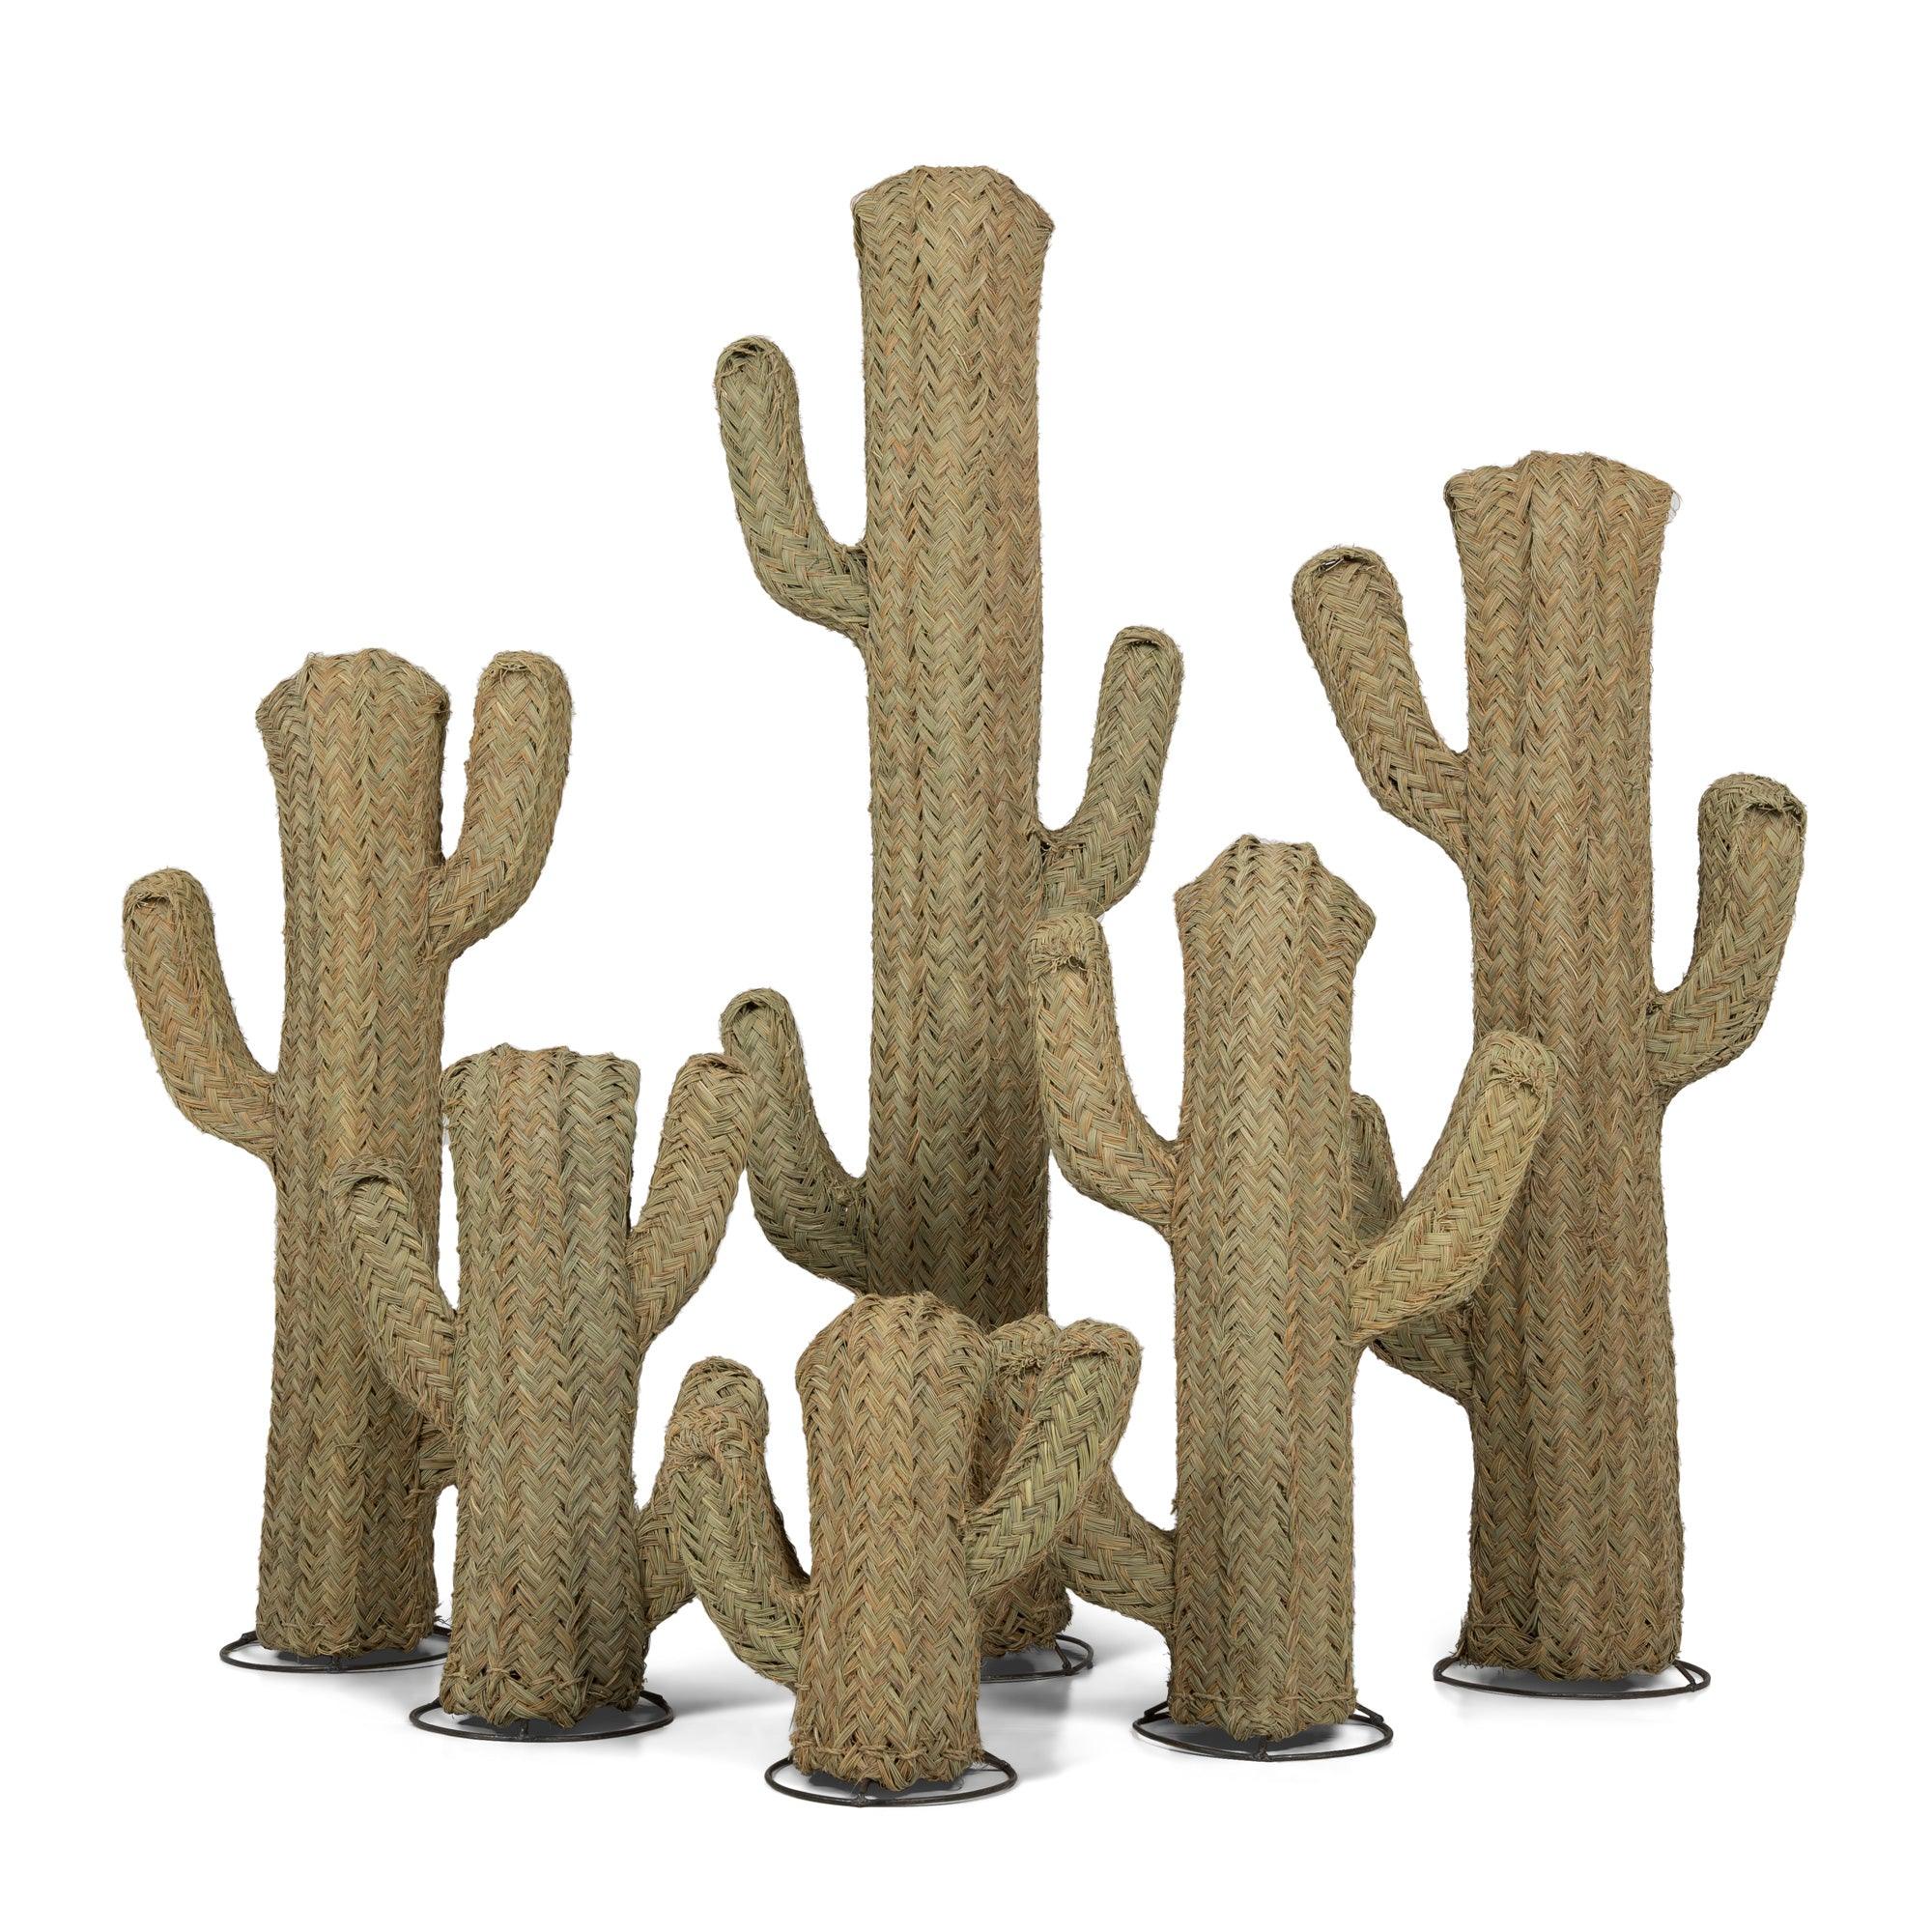 https://decoracionalcazaba.com/cdn/shop/files/cactus-de-esparto-vegetal-en-6-tamanos-decoracion-alcazaba-1_5000x.jpg?v=1688497649